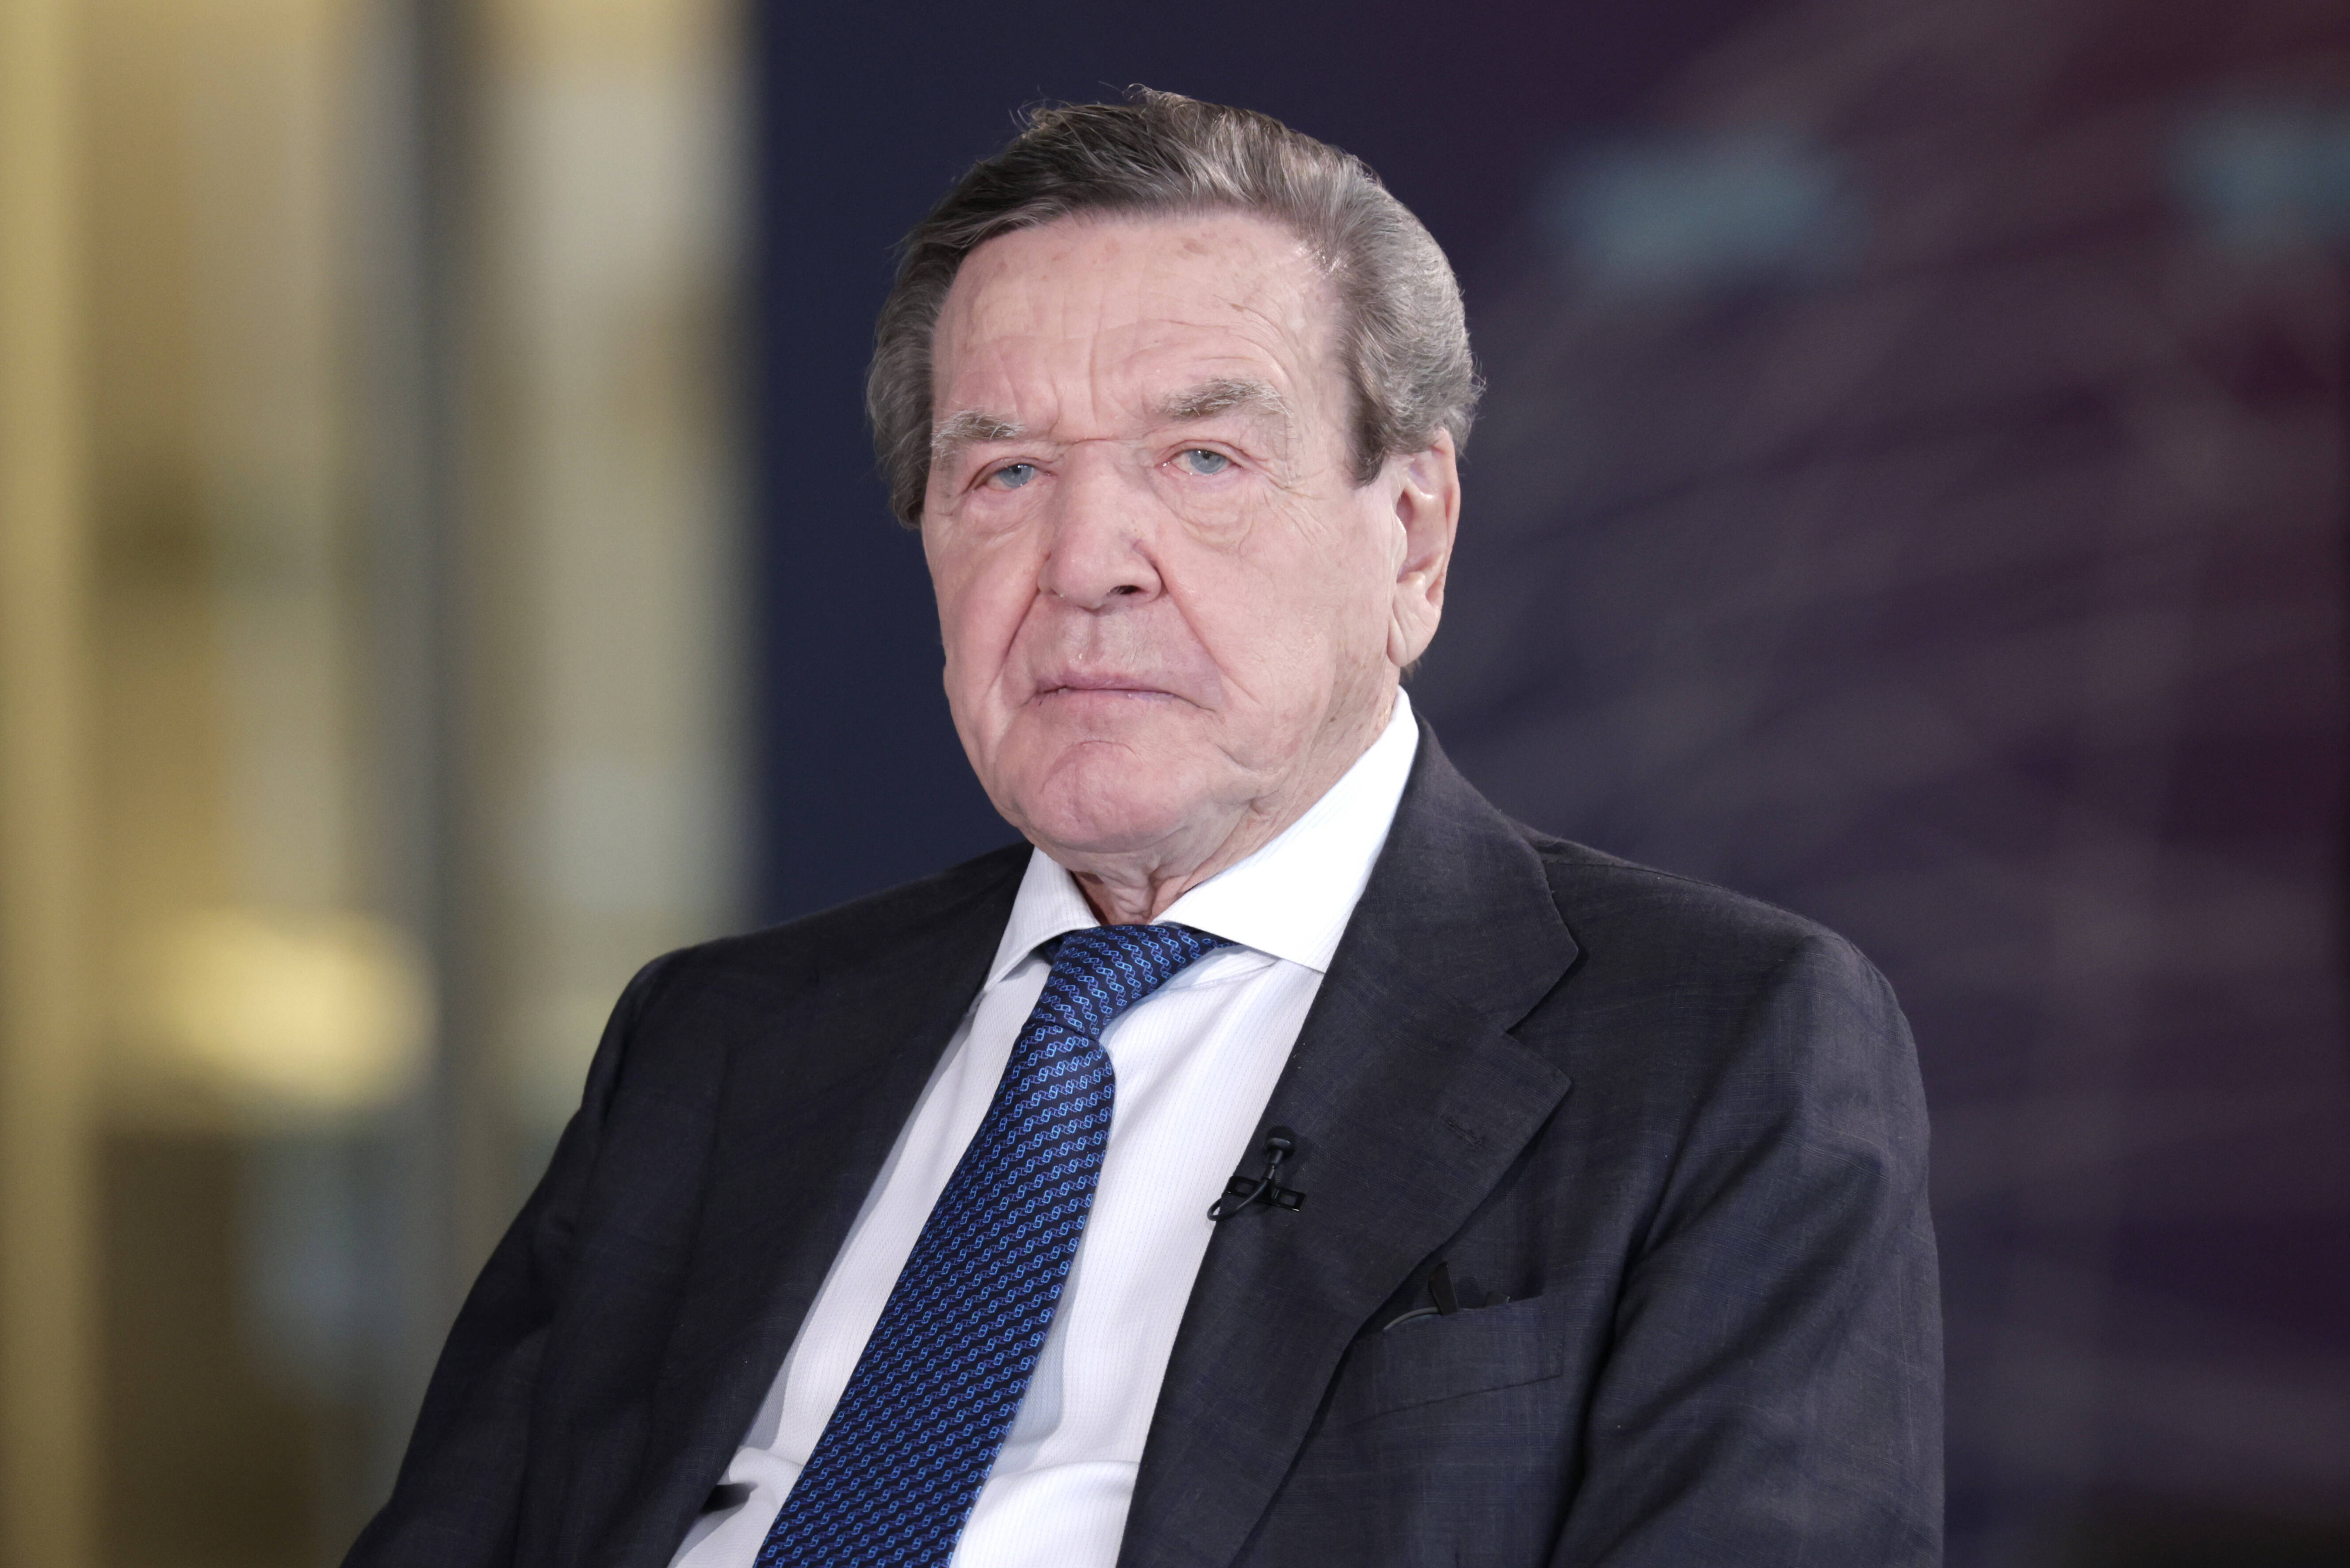 Gerhard Schröder - bittere Schlappe vor Gericht! Alt-Kanzler verliert Prozess gegen seine Ex-Frau!